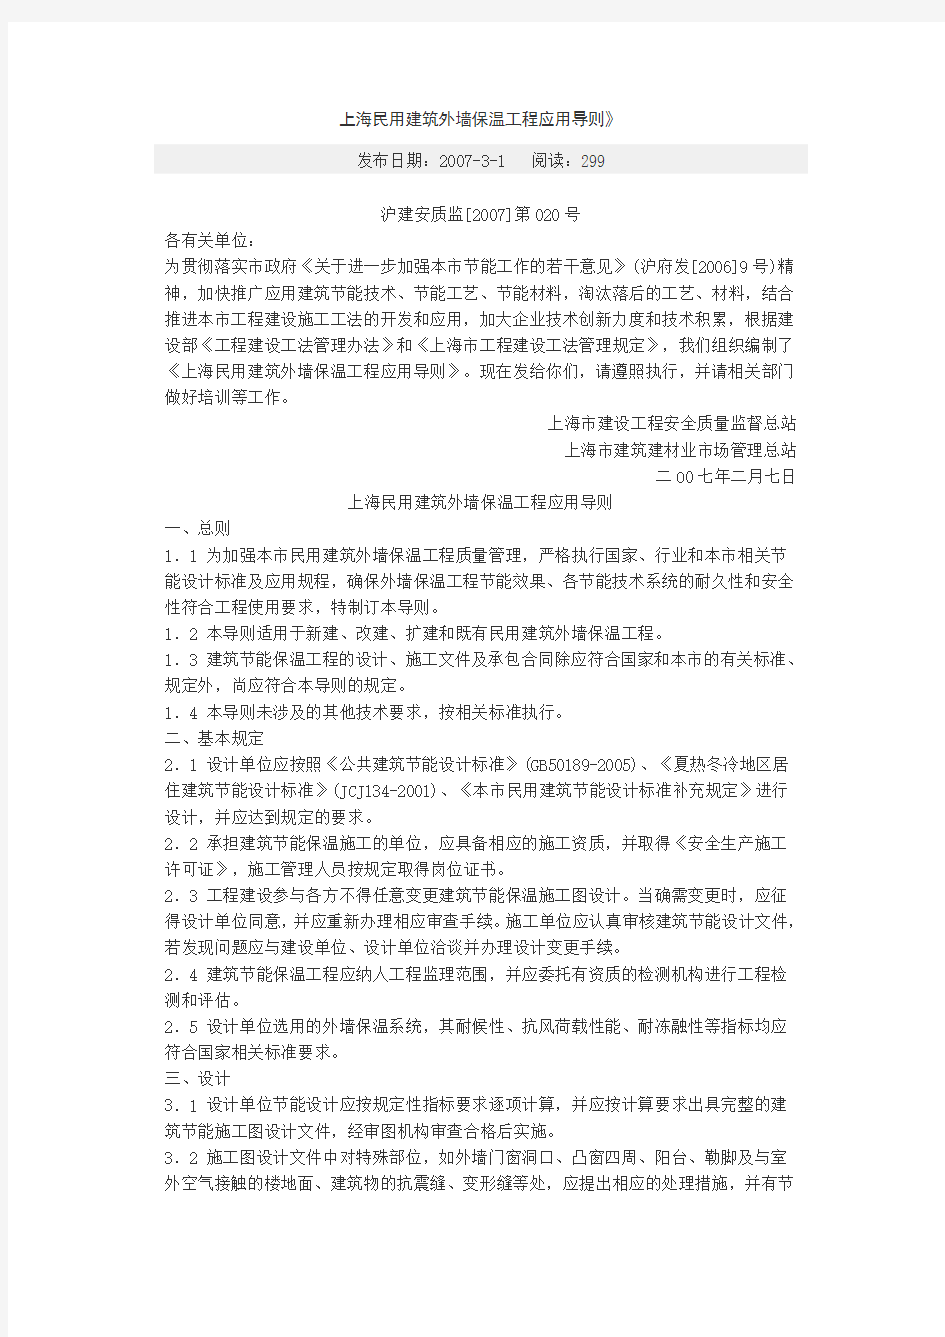 上海民用建筑外墙保温工程应用导则